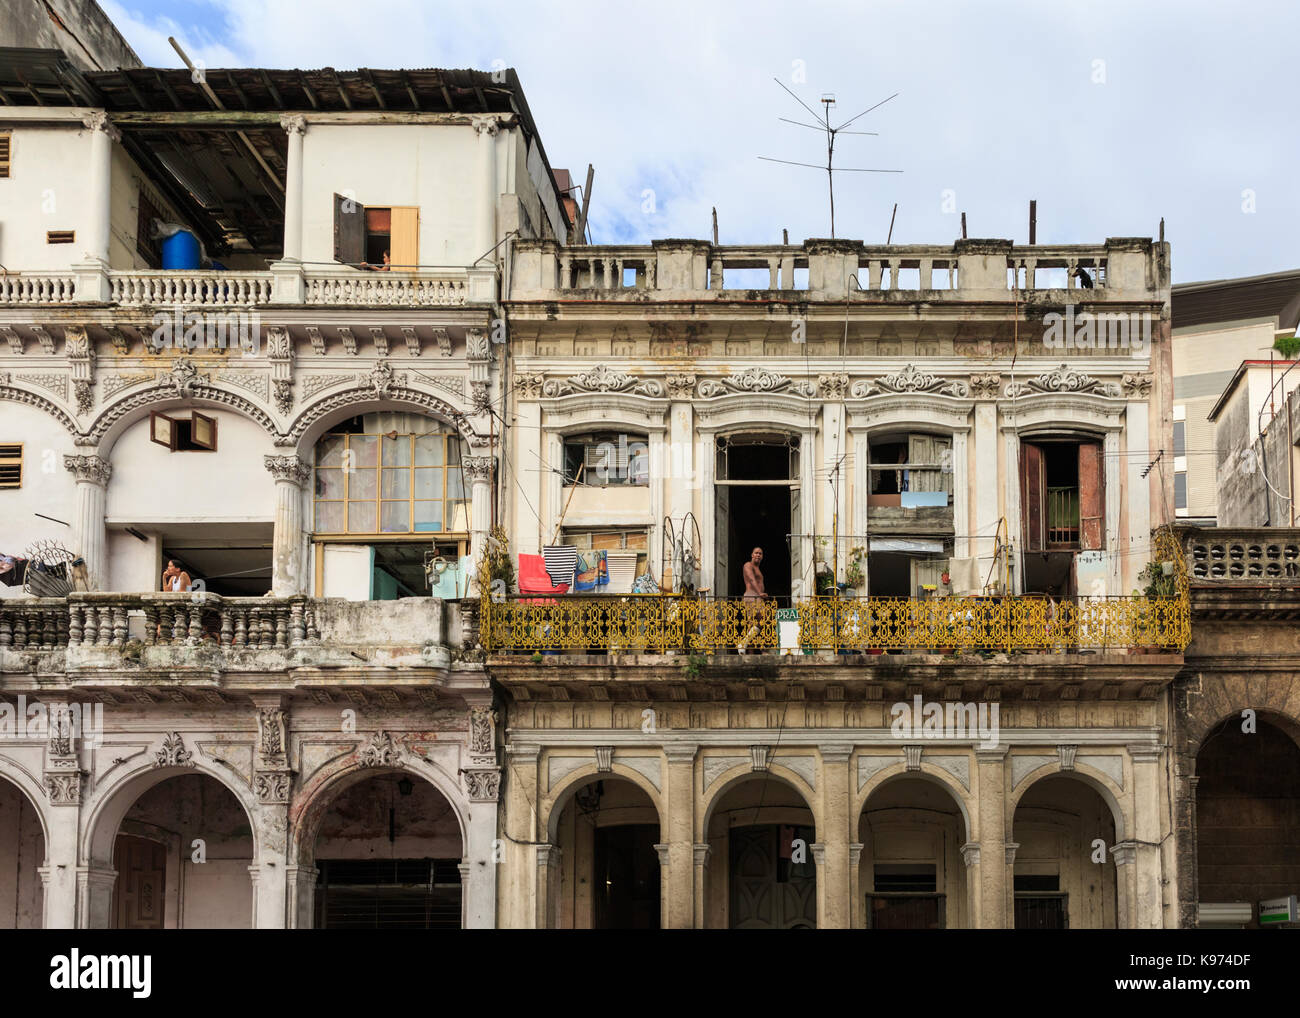 Die Kubaner auf der Suche nach Balkon der historischen Gebäude, Wohn- Architektur in Habana Vieja, die Altstadt von Havanna, Kuba Stockfoto